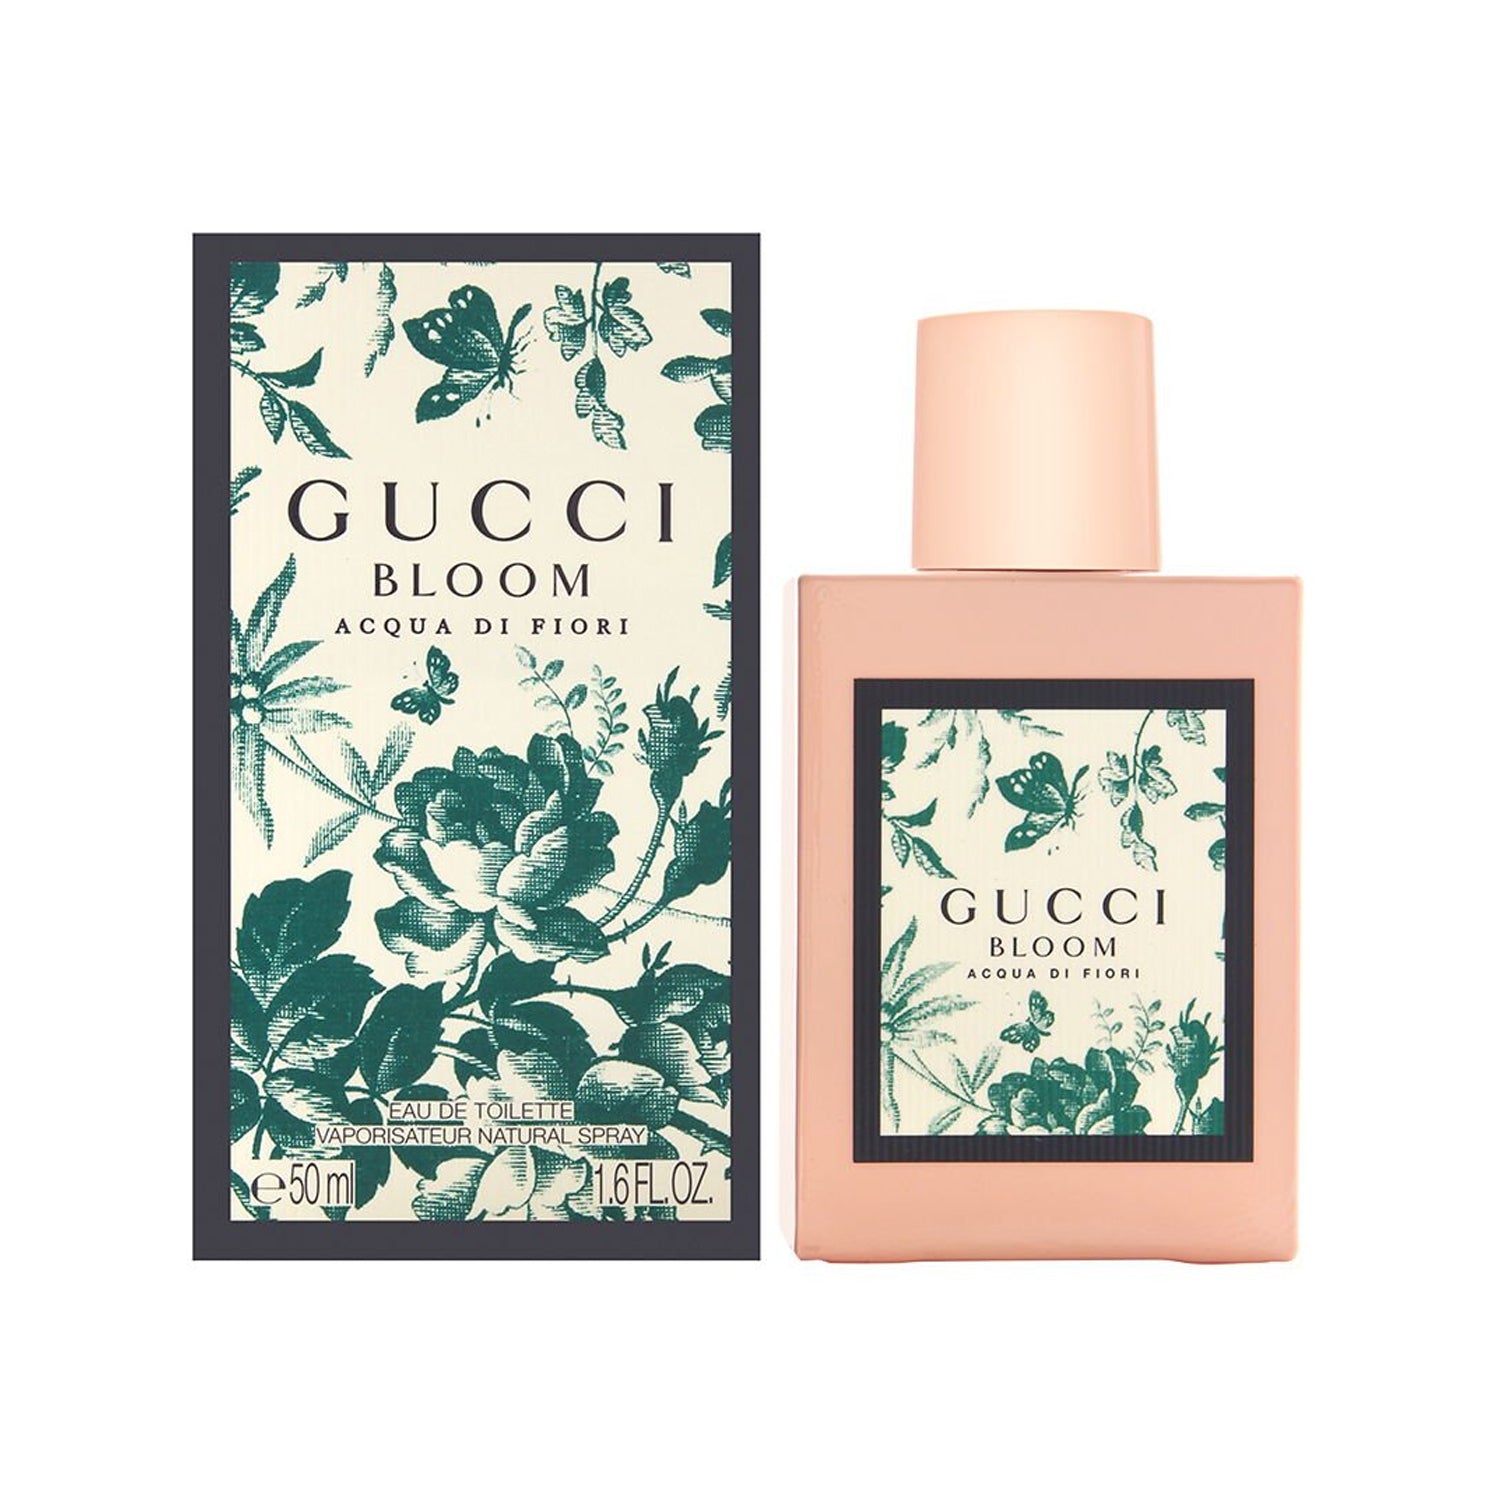 Gucci Bloom Acqua Di Fiori 50 ml Eau De Toilette Spray For Women